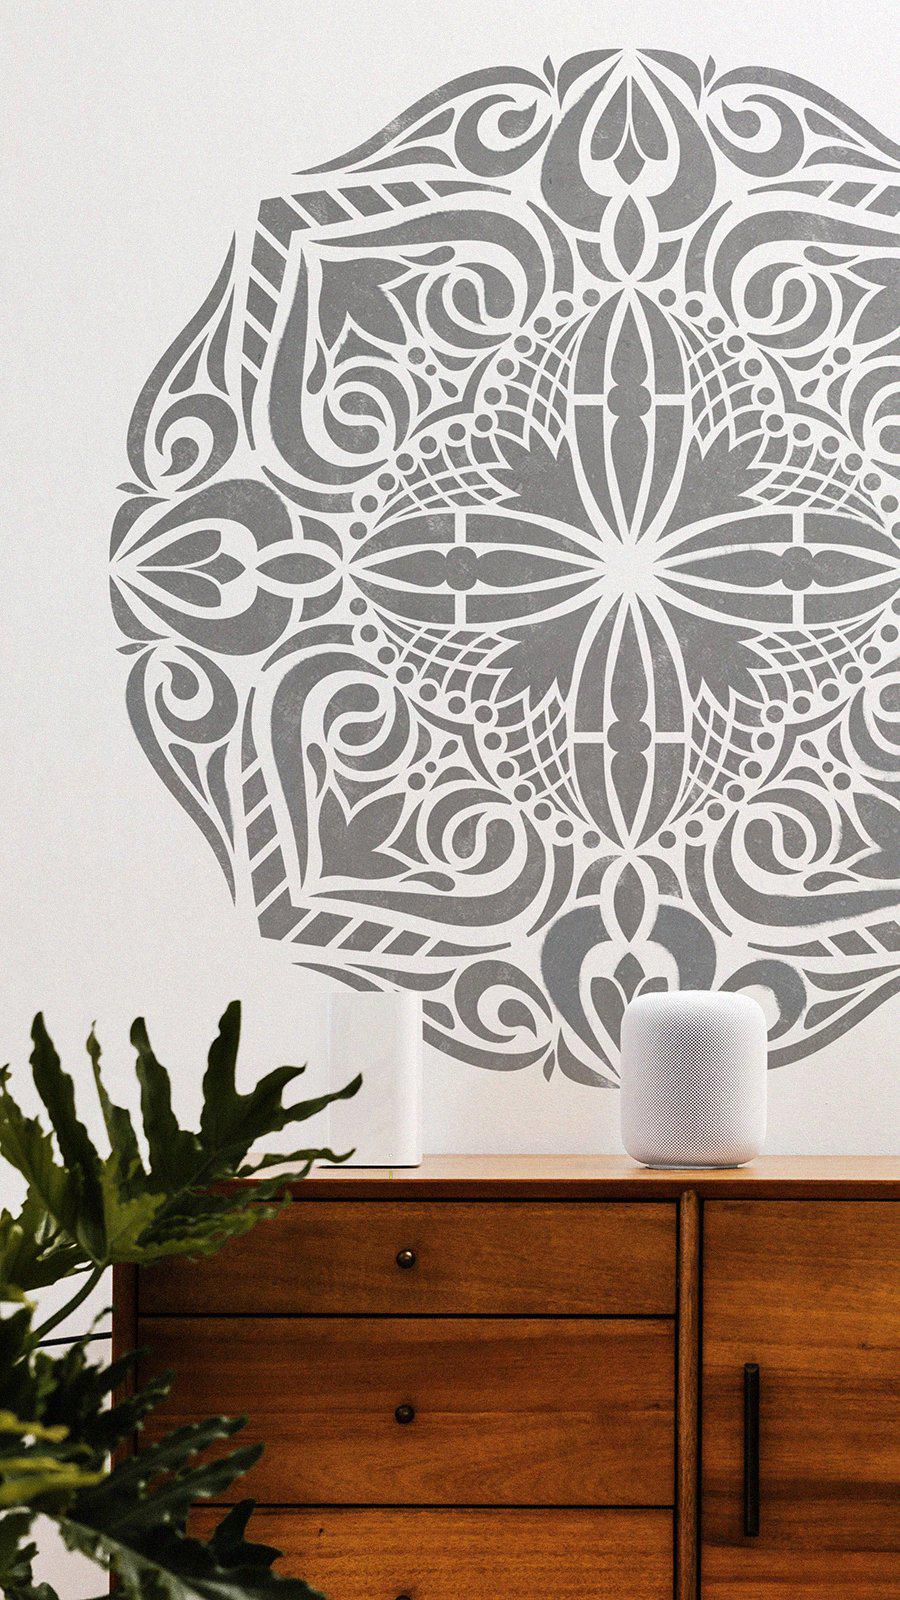 Mandala Stencil Abundance - Large Mandala Stencils for DIY Wall